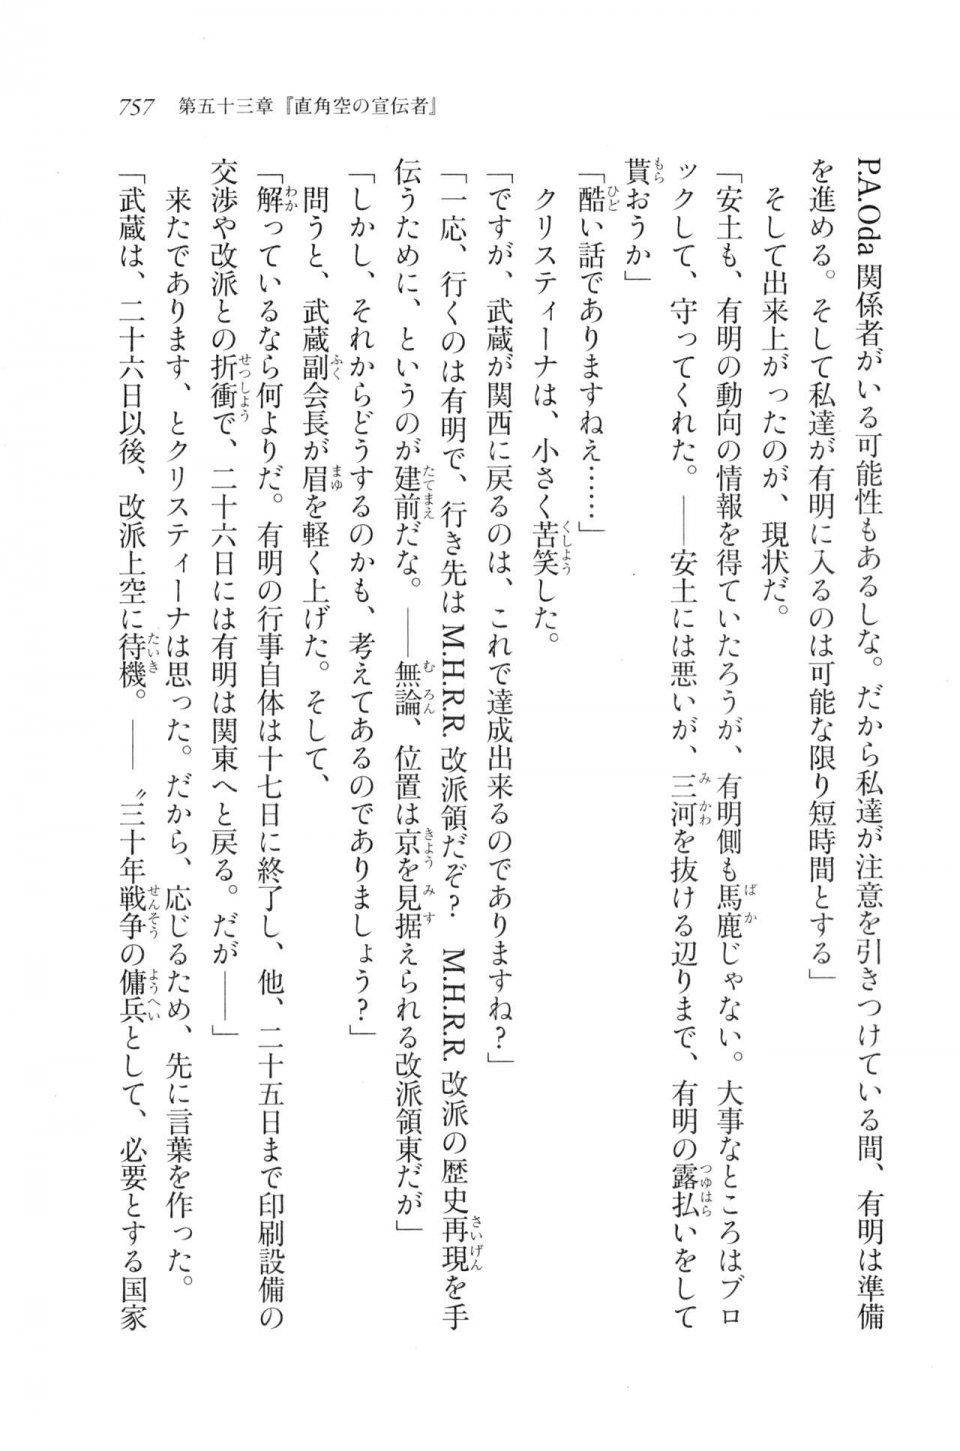 Kyoukai Senjou no Horizon LN Vol 20(8B) - Photo #757